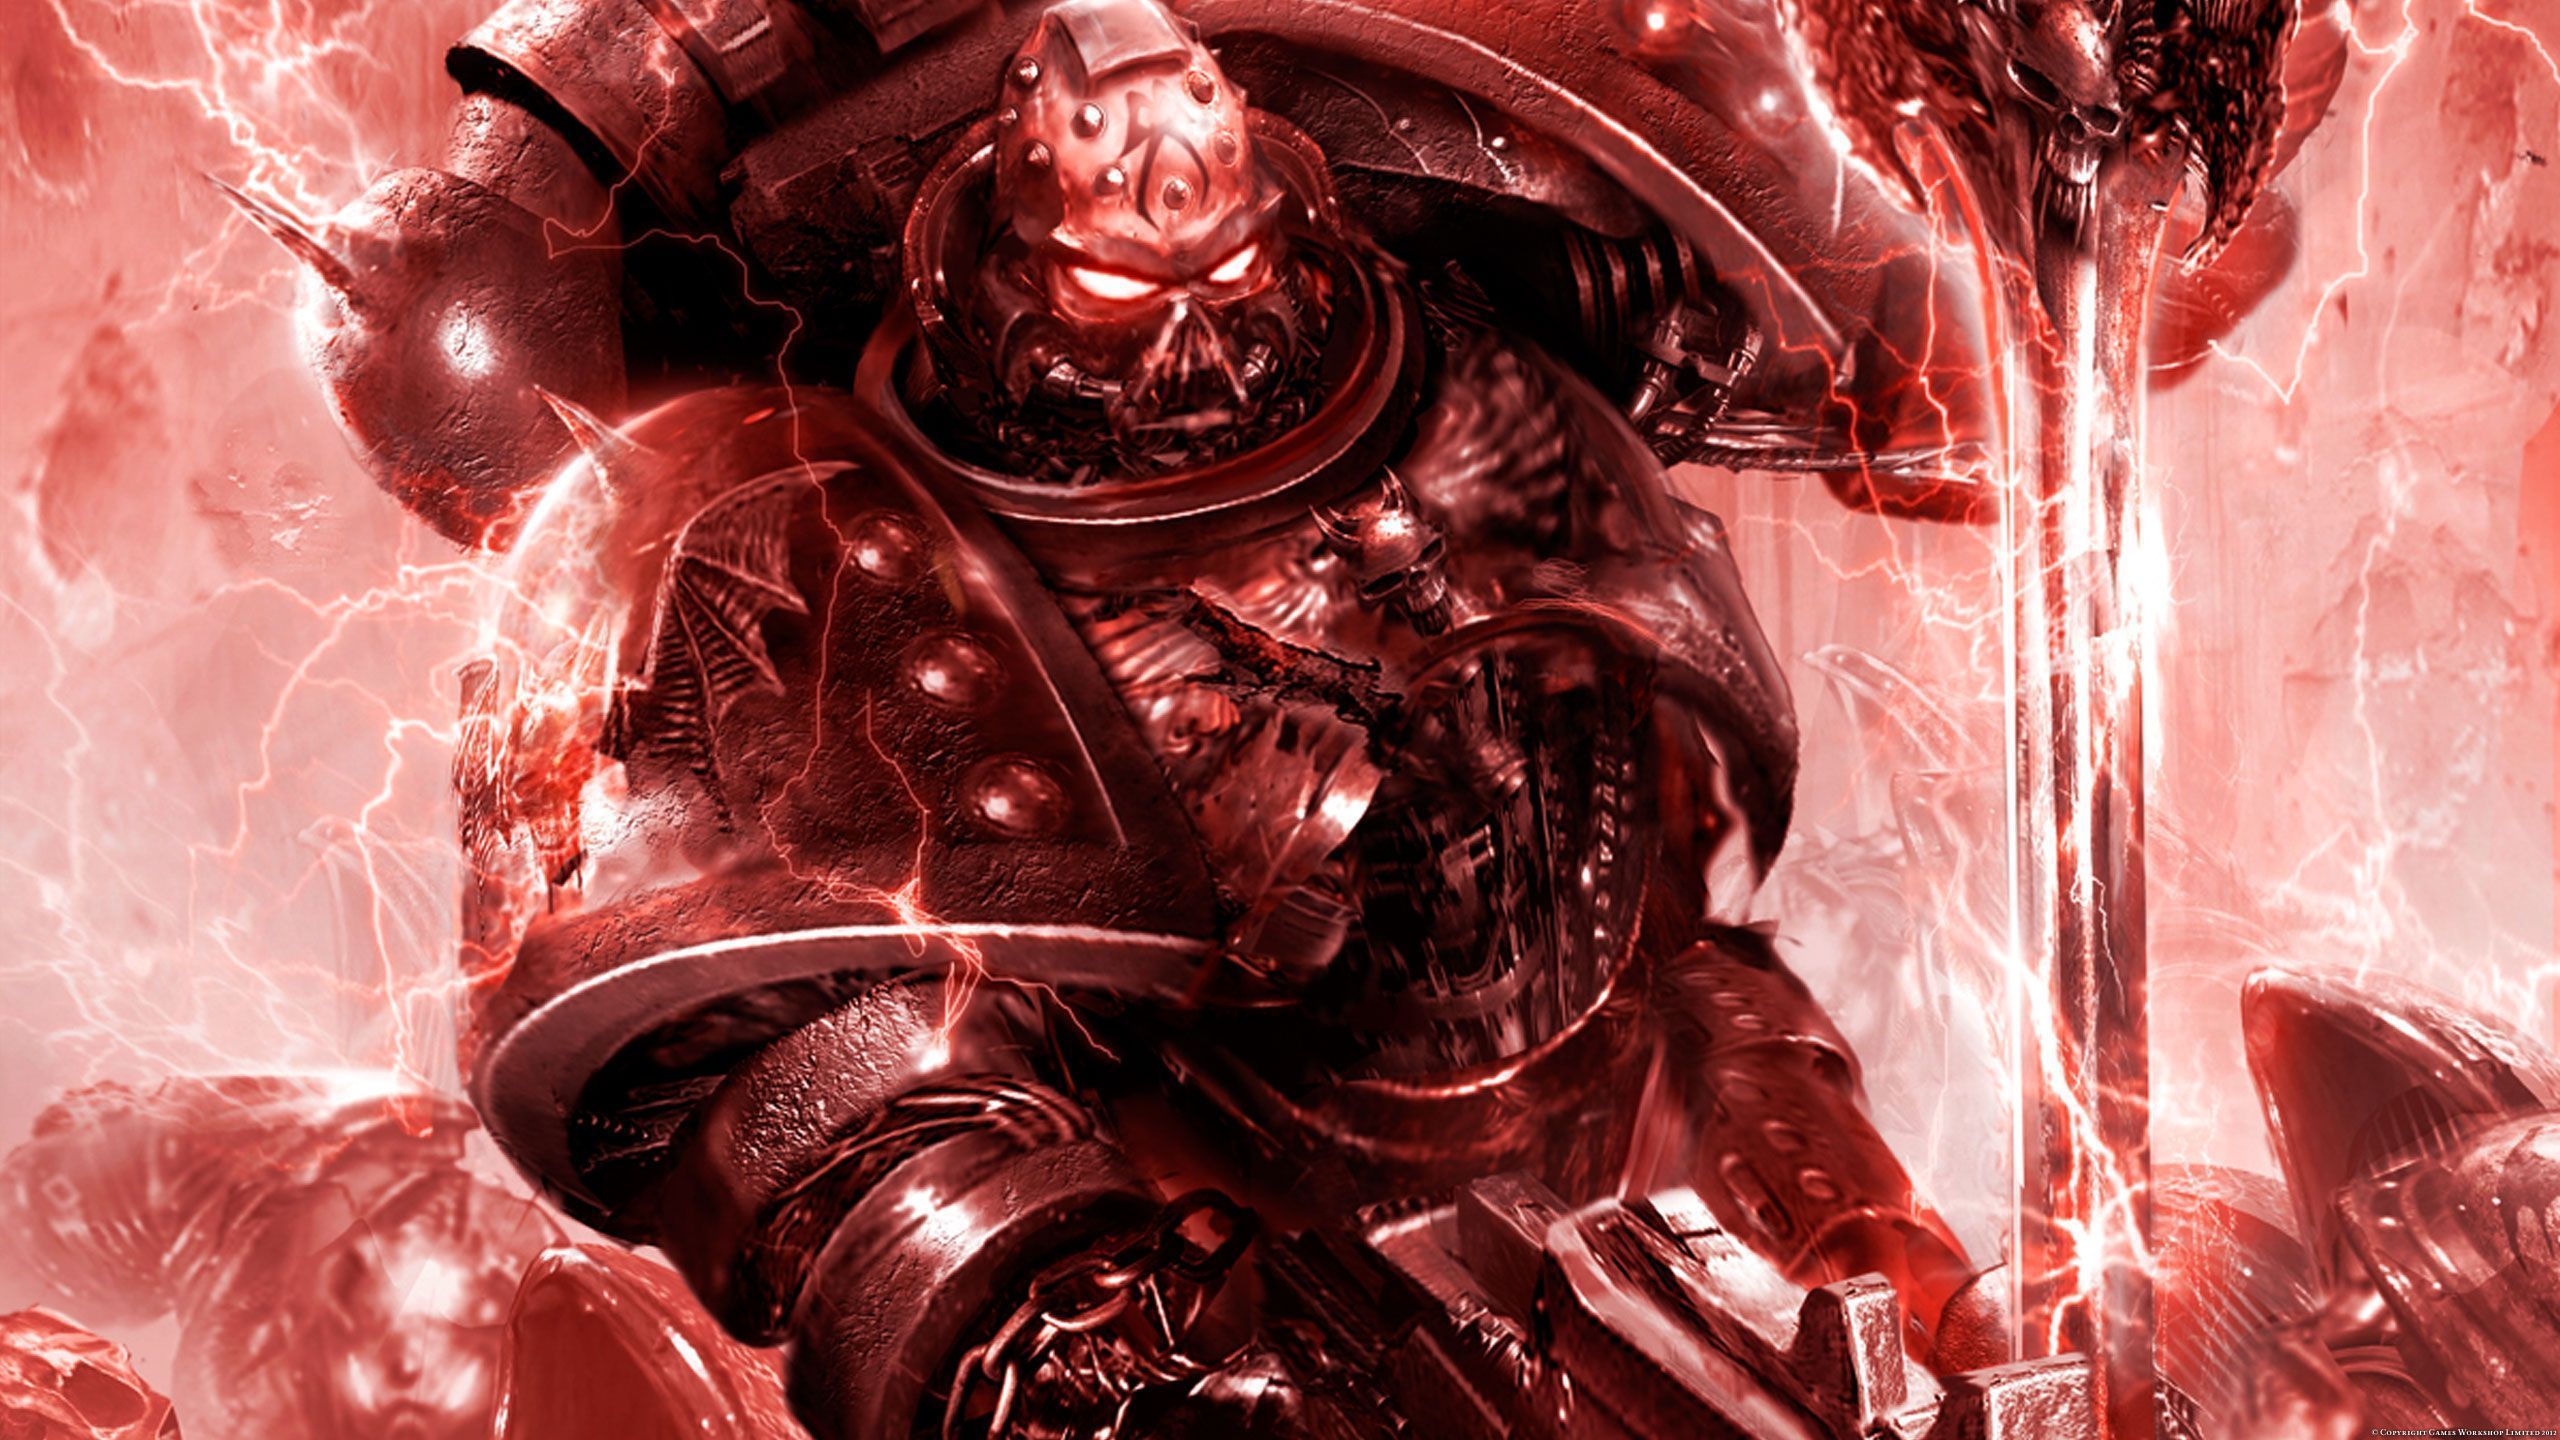 Warhammer 40K Wallpaper | 2560x1440 | ID:30641